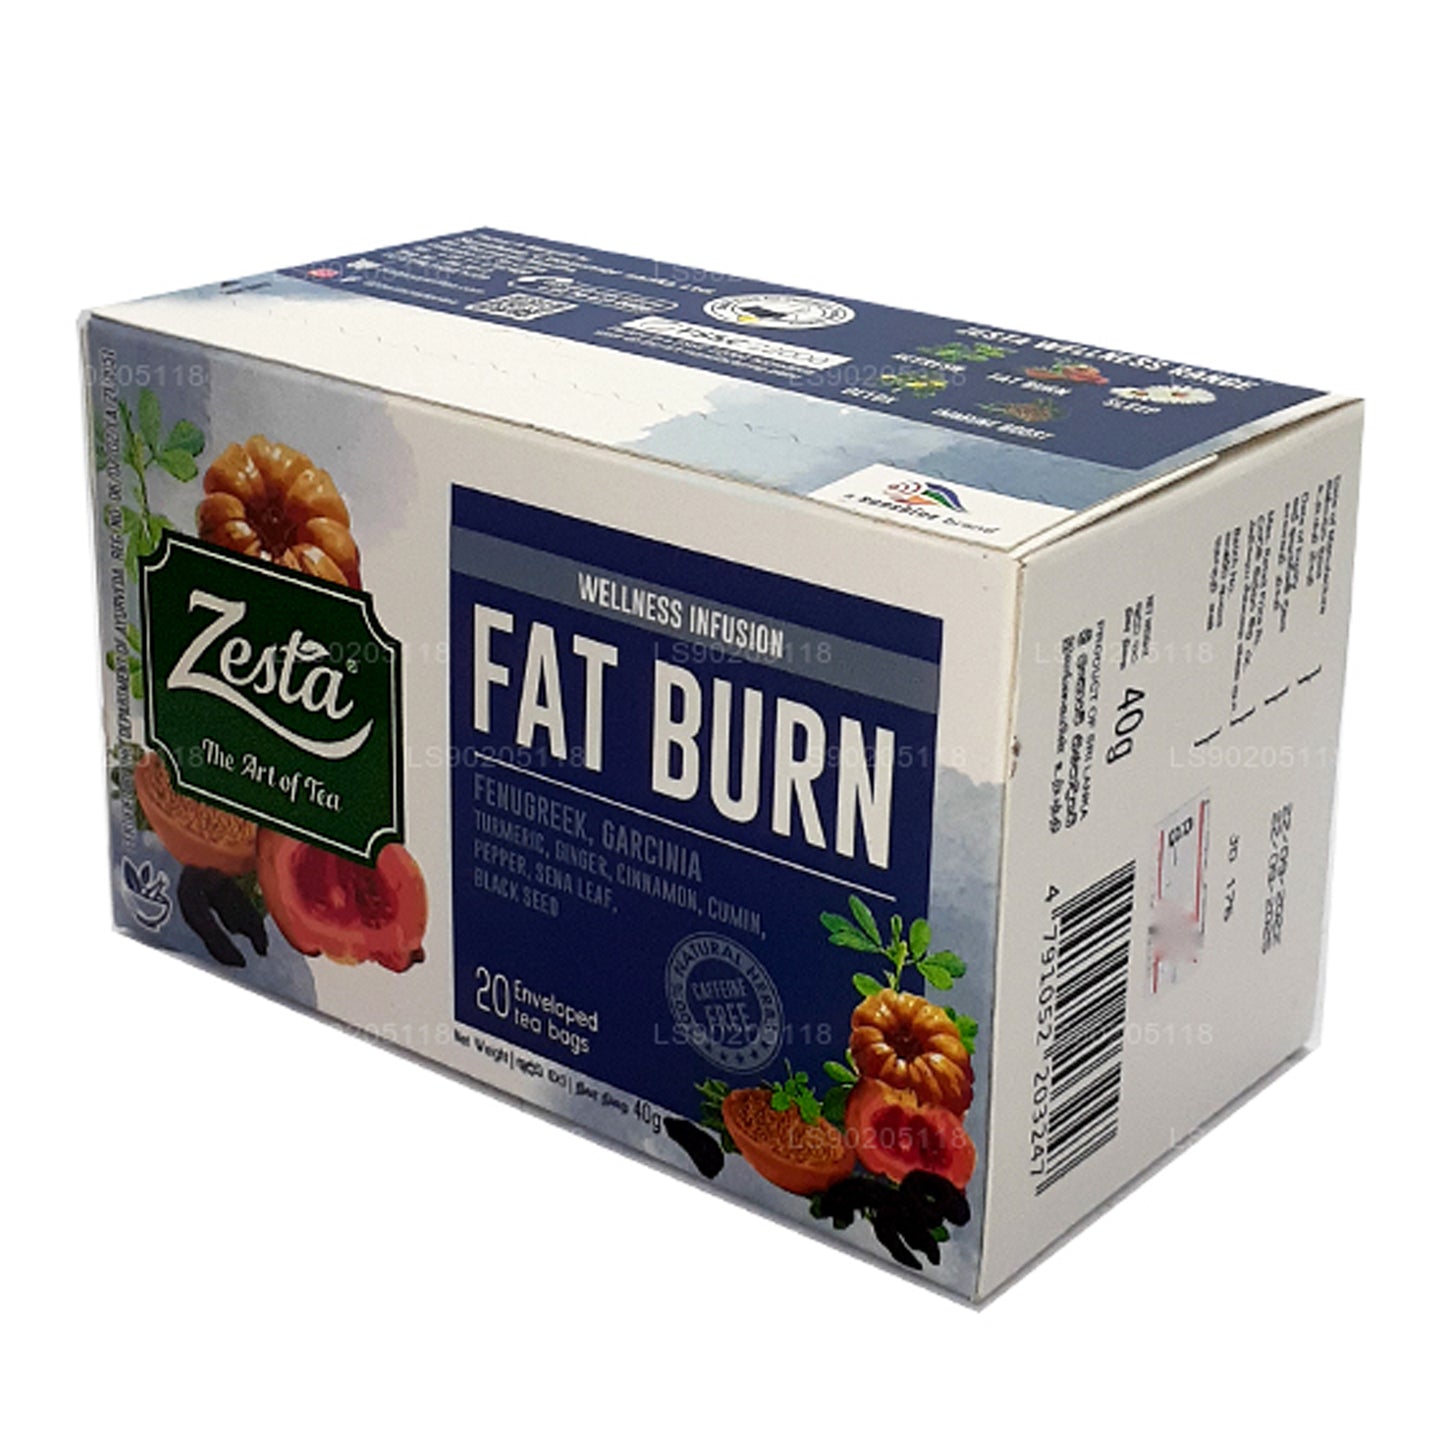 Zesta Fat Burn (40g) 20 teposer